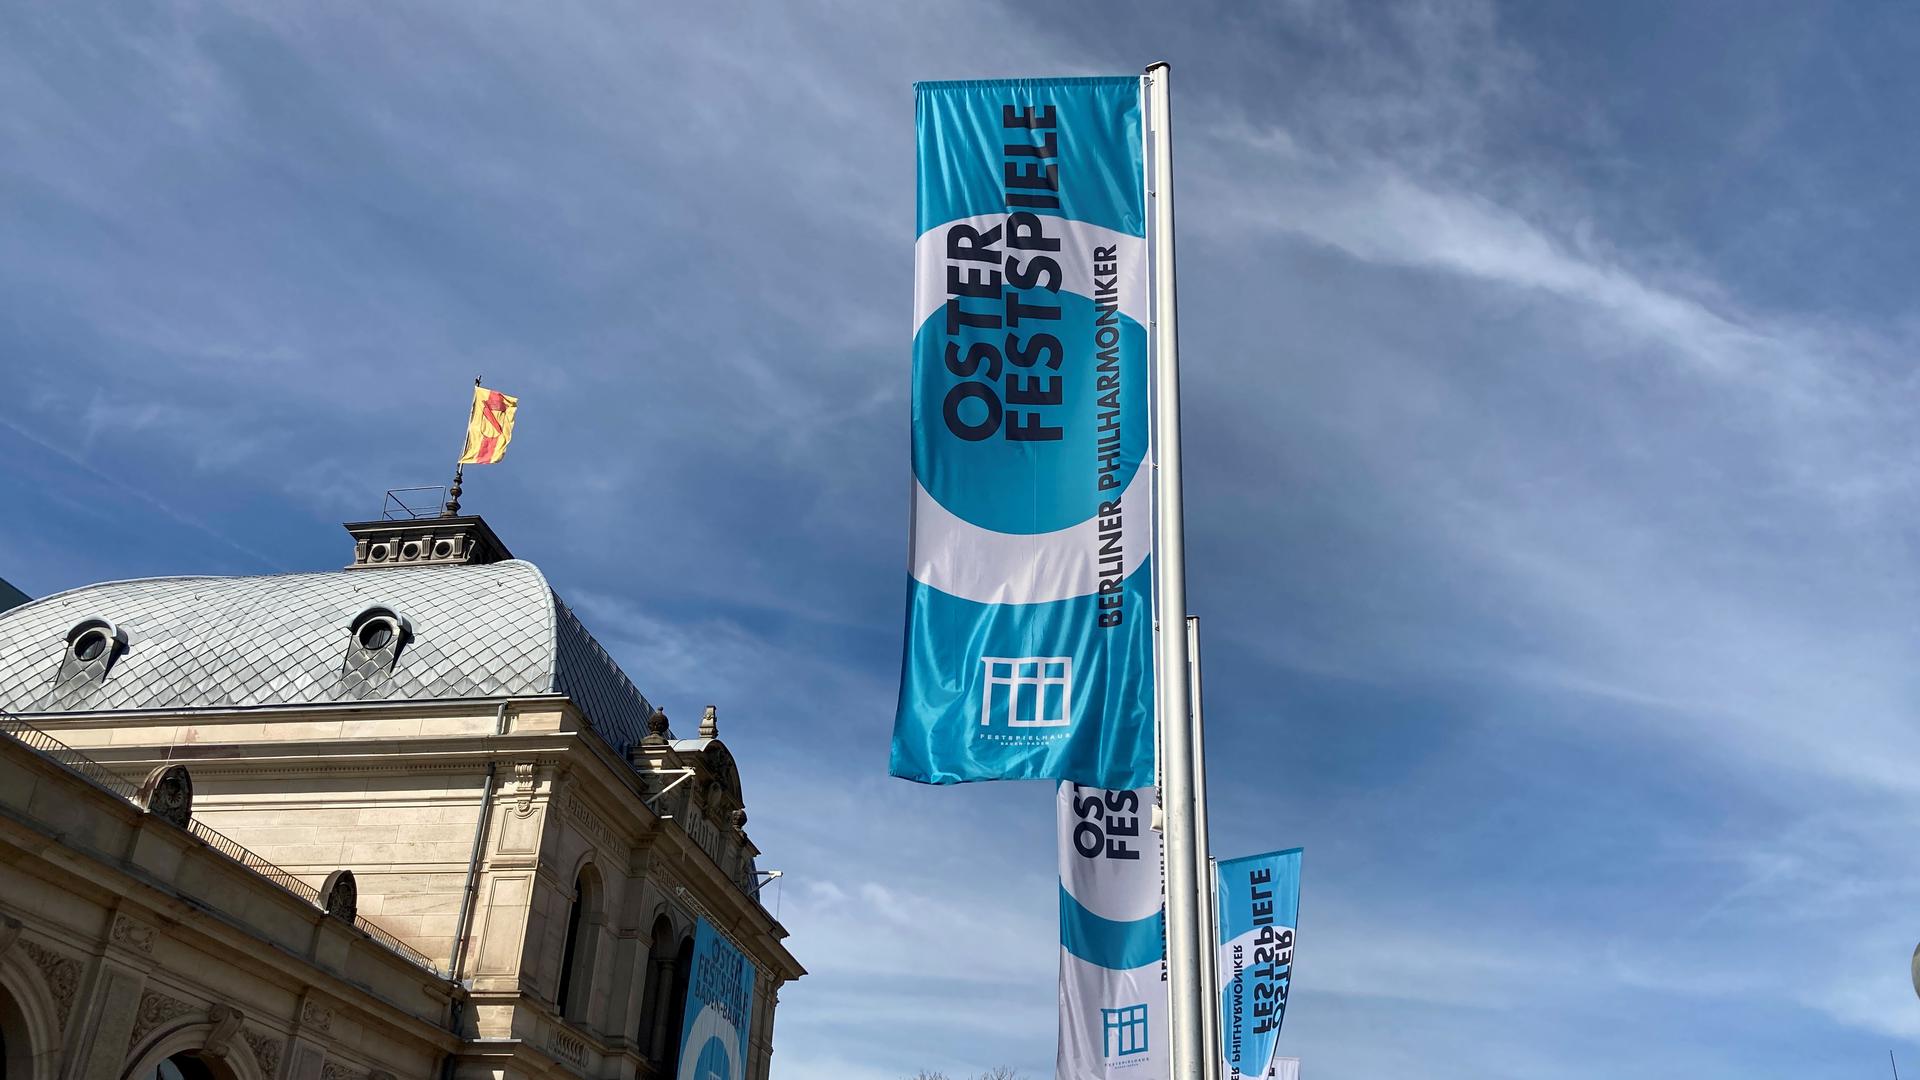 Vor dem Festspielhaus Baden-Baden wehen Flaggen in den Farben Blau und Weiß.